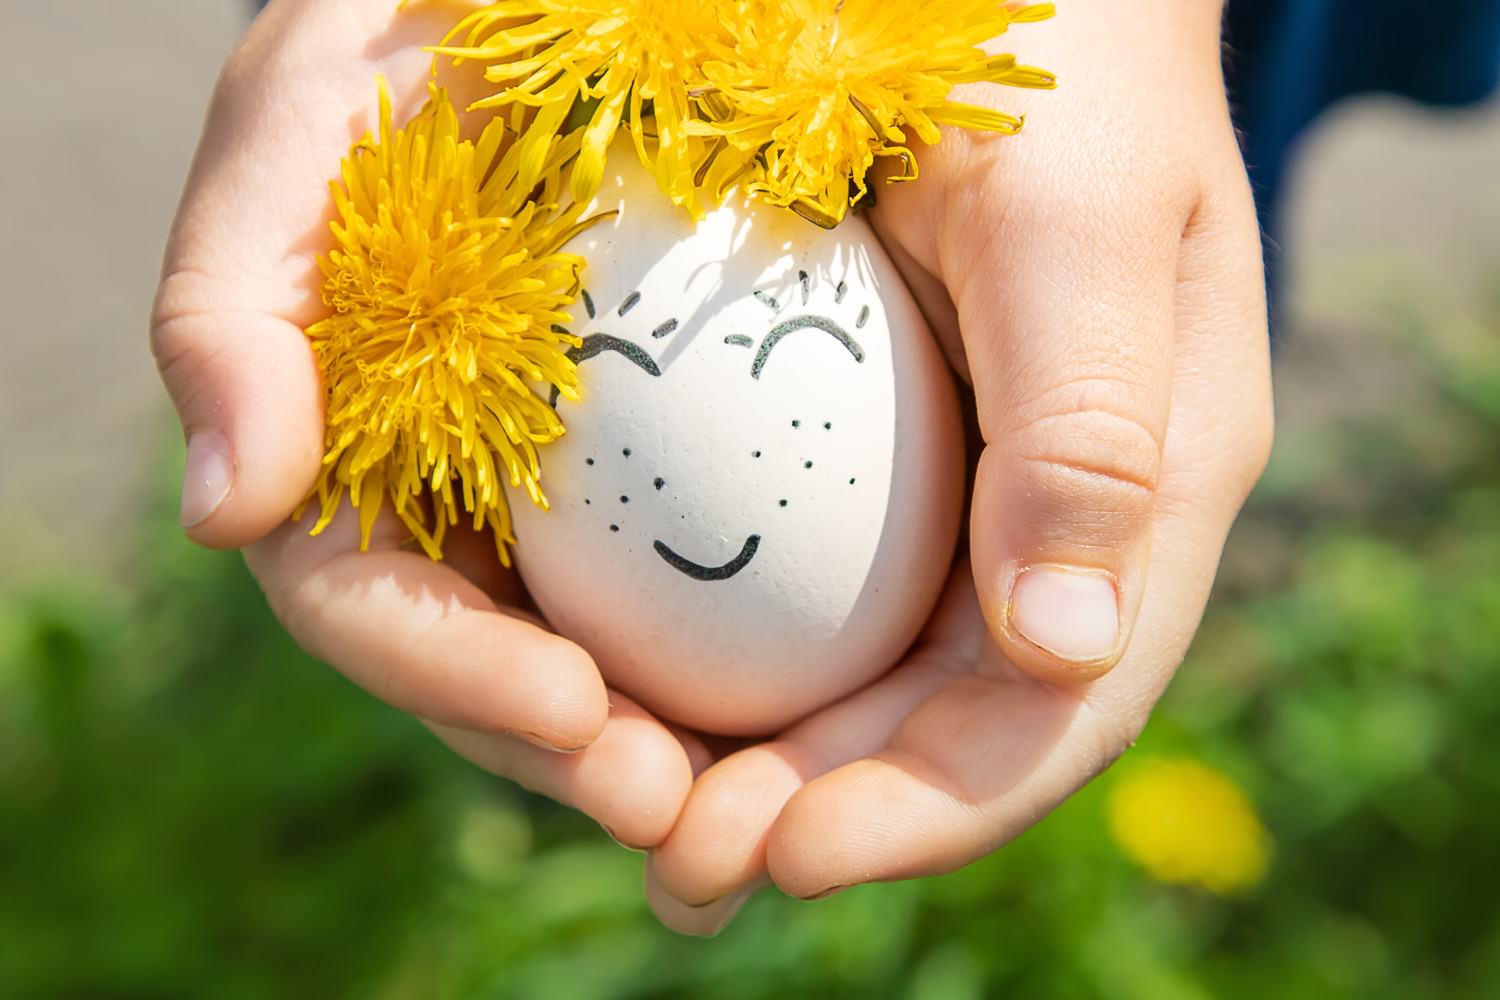 Bild zeigt: Kinderhände schützen ein Ei mit aufgemaltem Smiley